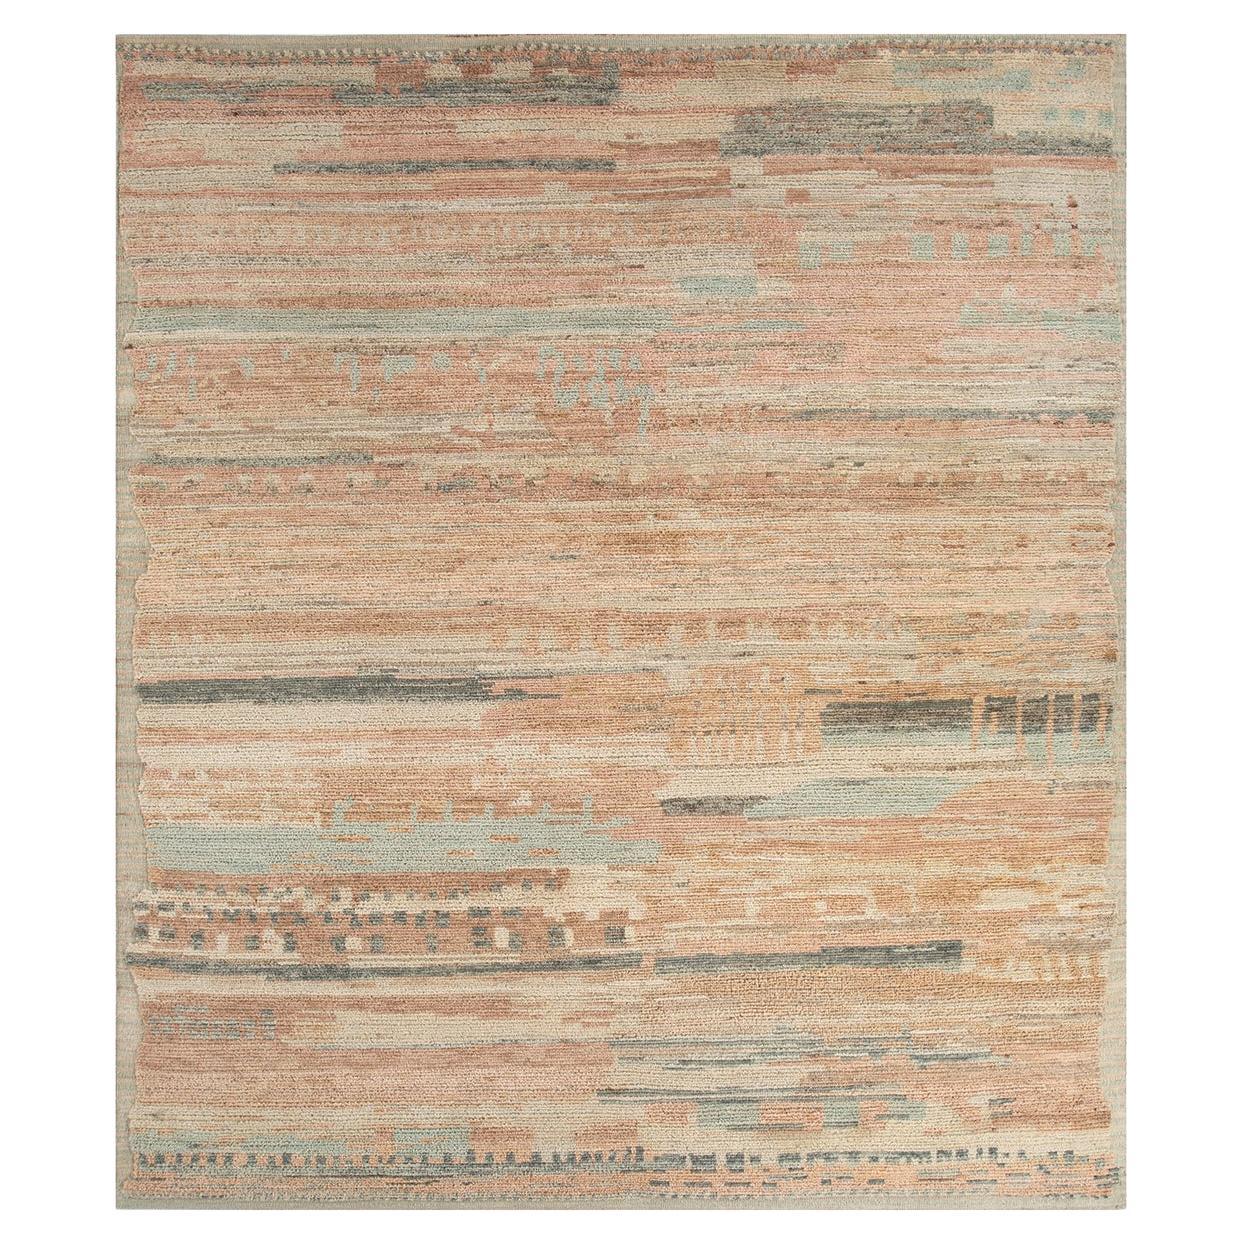 Tapis empilé de tisserands rurals, noué, laine, 240 x 300 cm